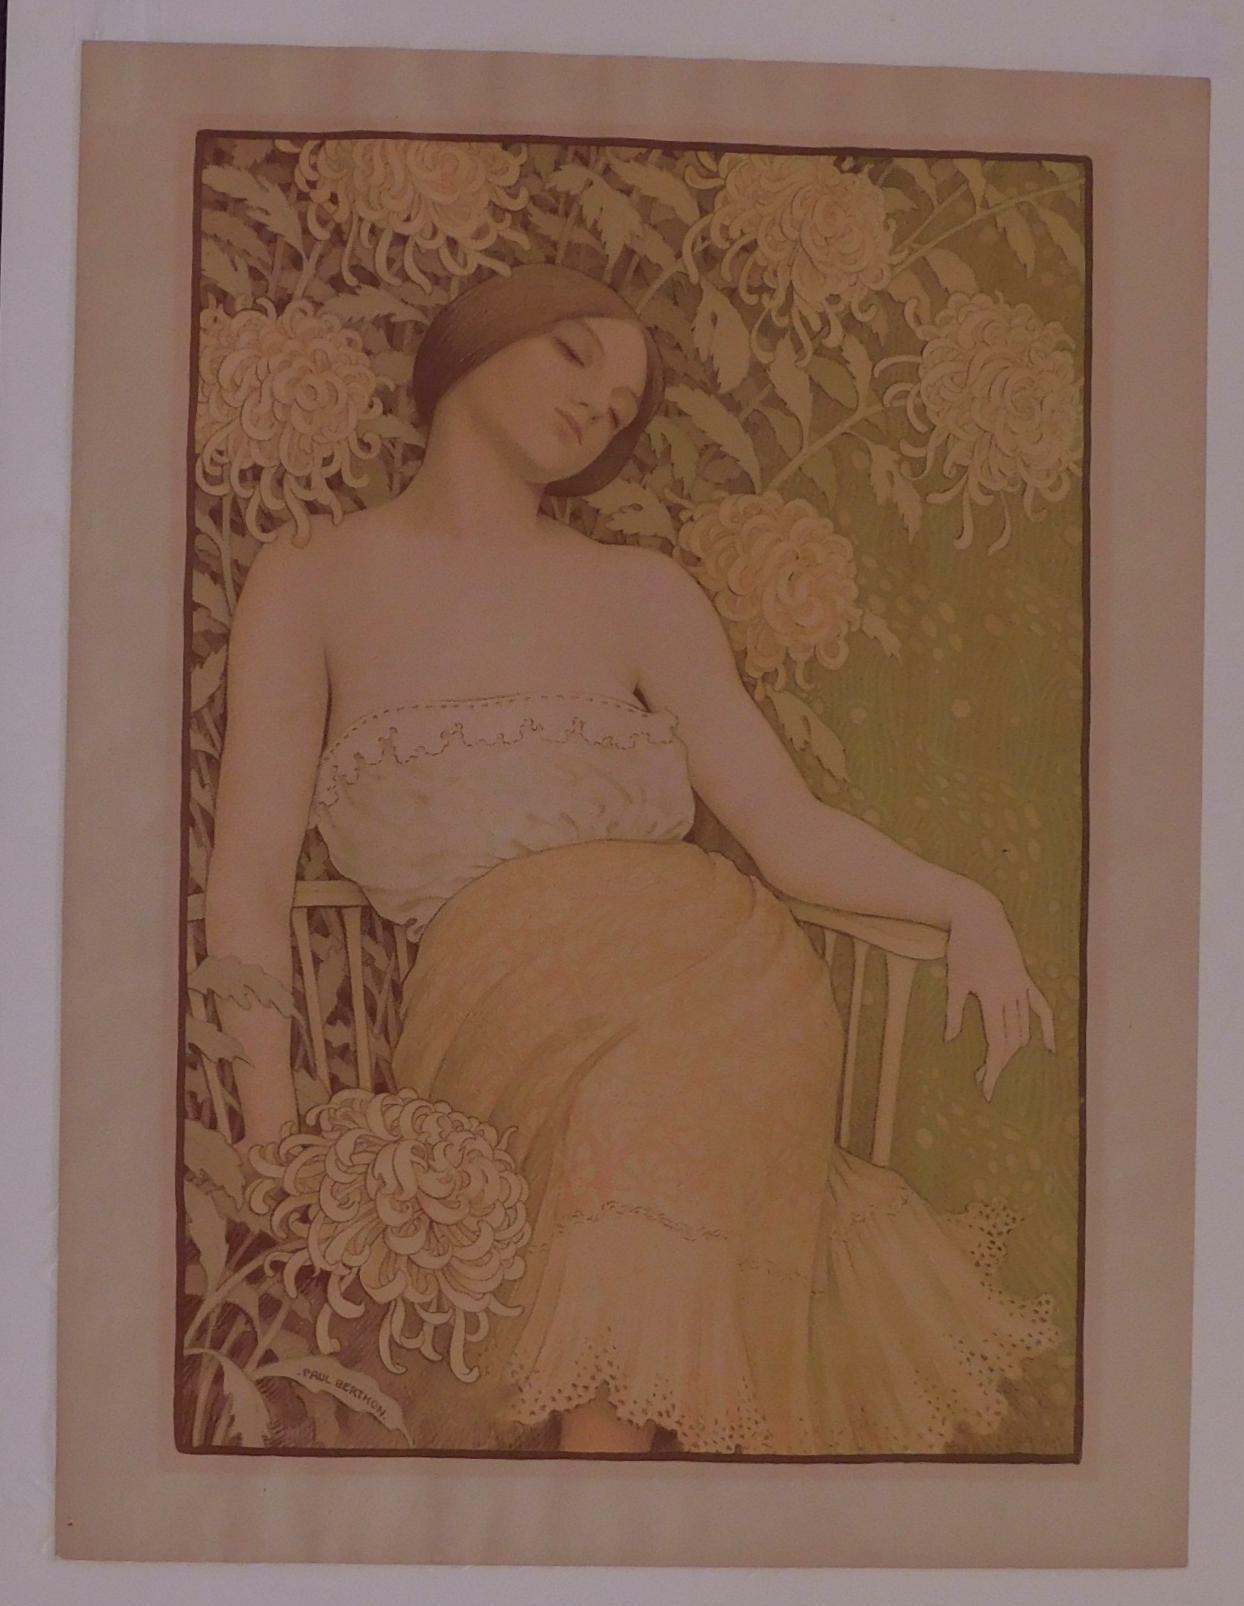 Merveilleuse lithographie originale en couleurs de Paul Berthon (1872-1909).
En excellent état avec de belles couleurs. Non encadré. Présenté dans un tapis d'archivage 4 plis.
Intitulé : 